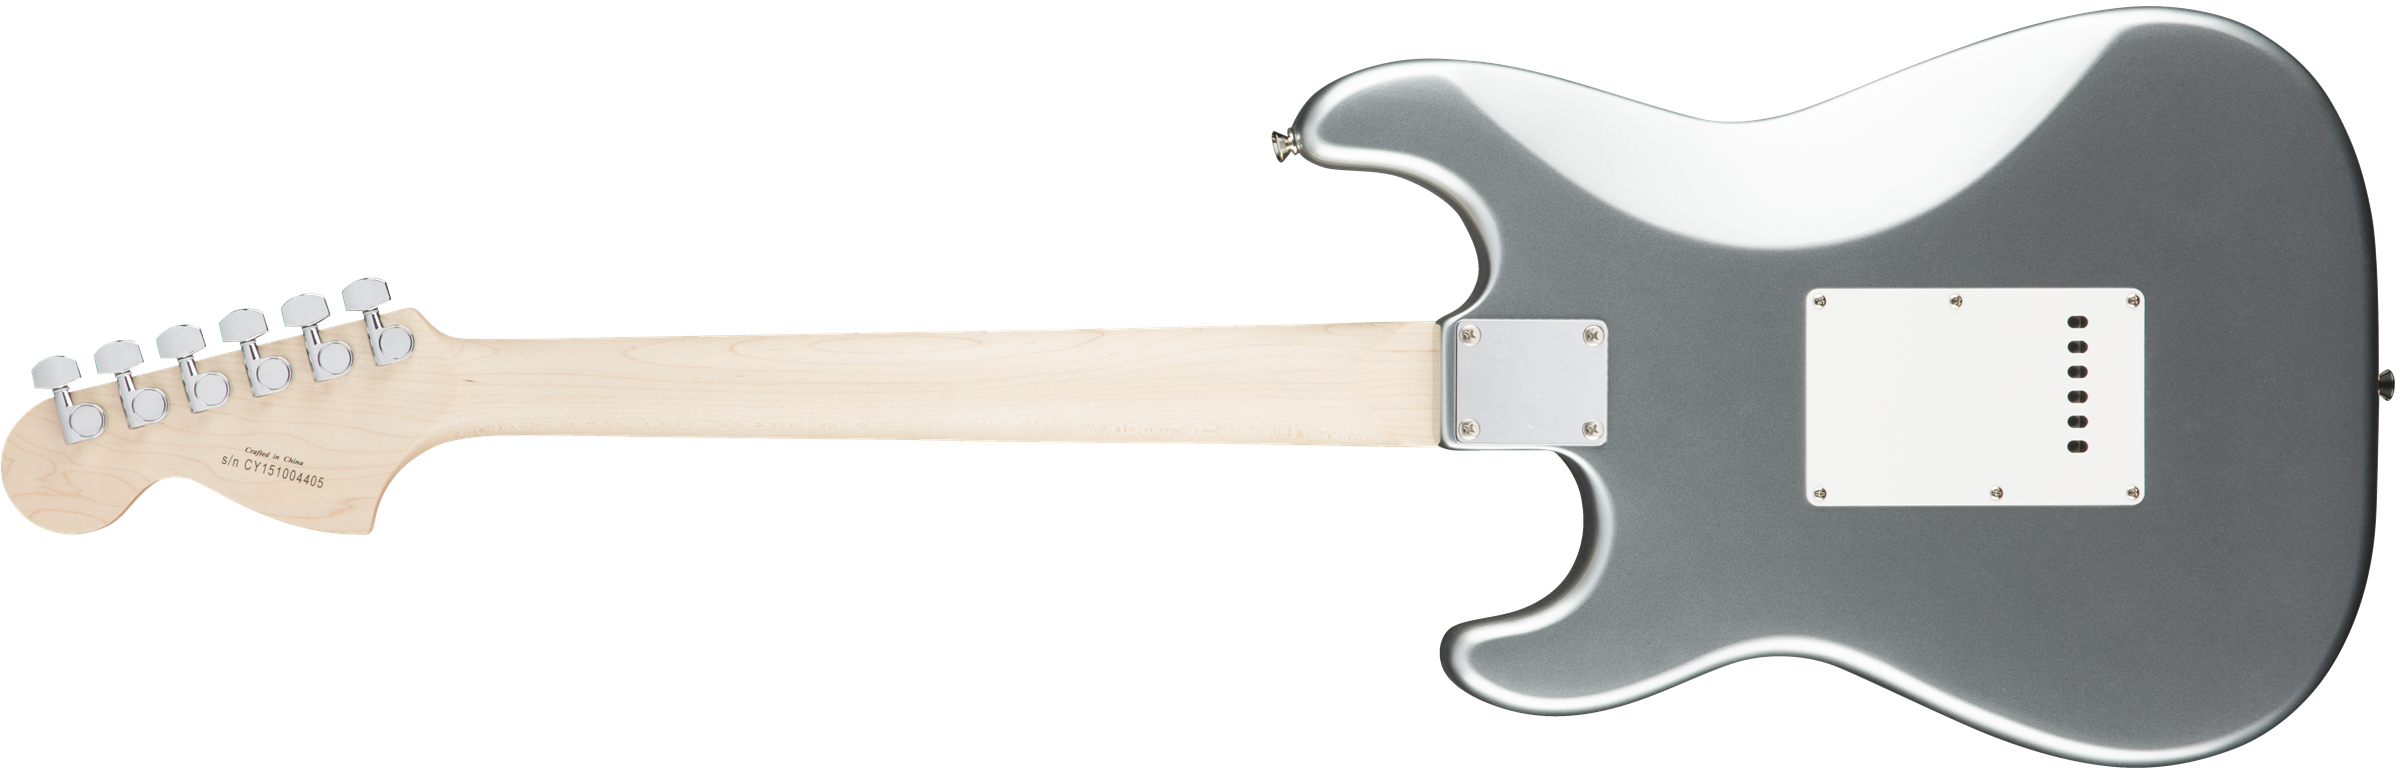 Squier Strat Affinity Series 3s Lau - Slick Silver - Guitarra eléctrica con forma de str. - Variation 1